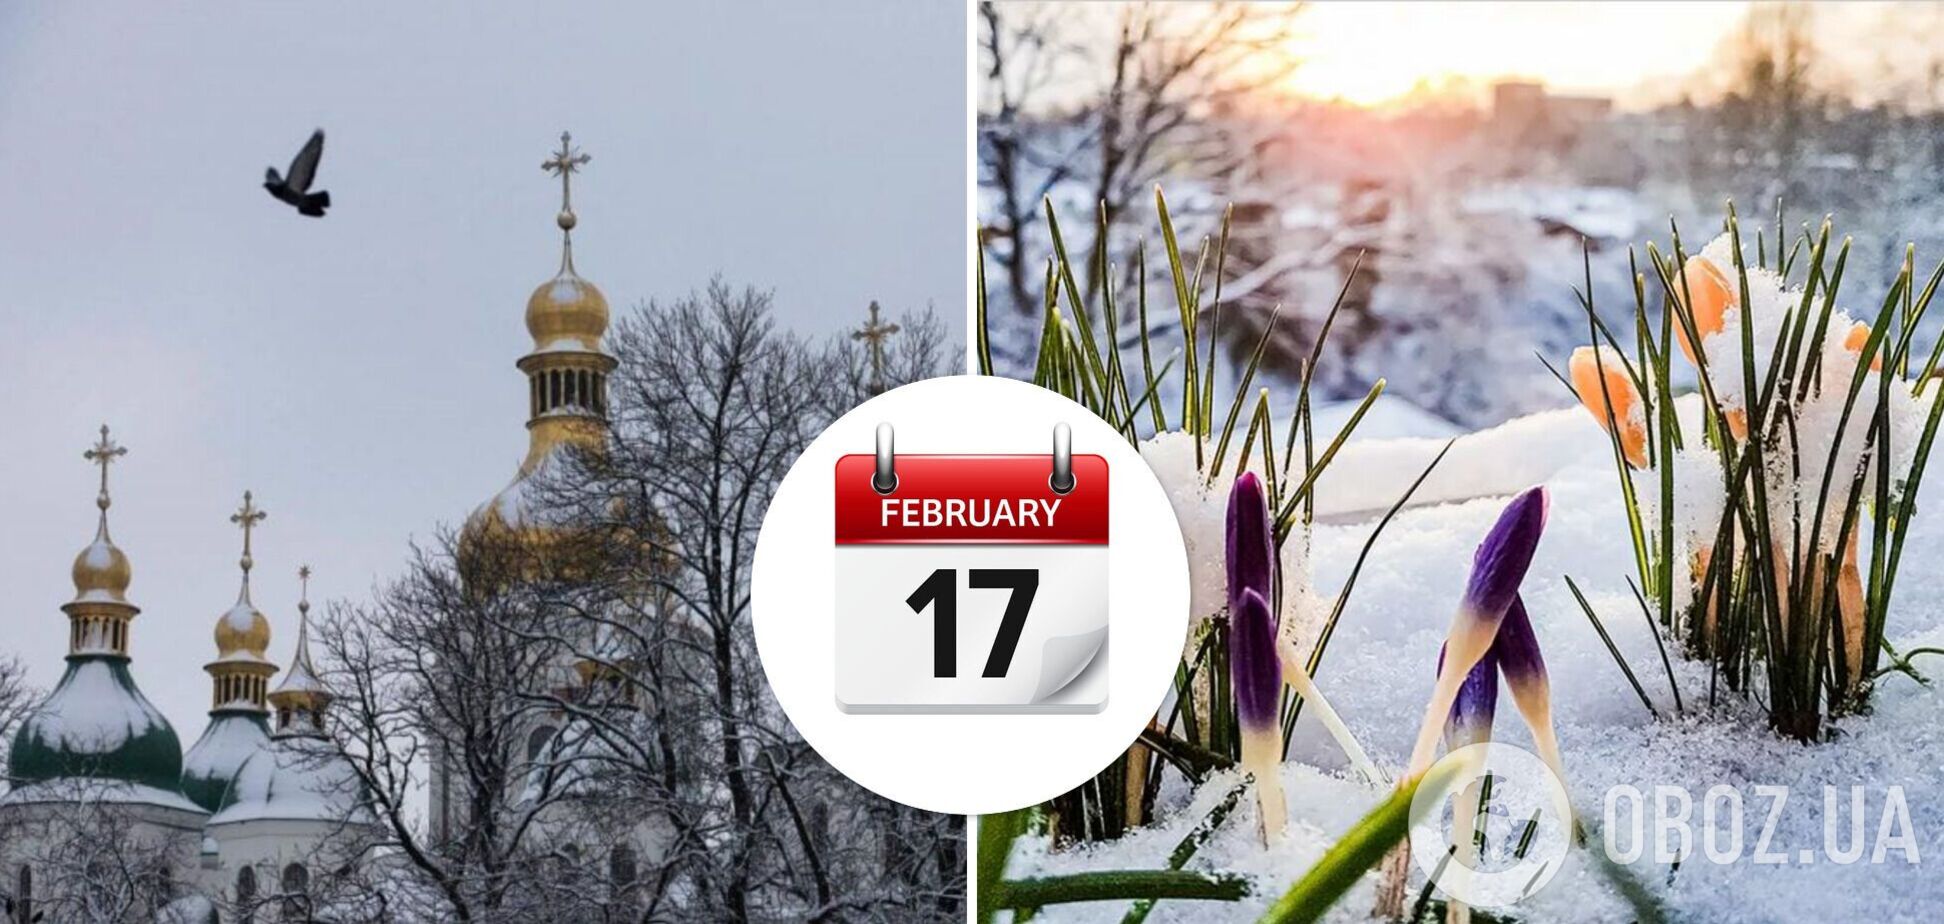 День Николая Студеного: приметы и запреты праздника